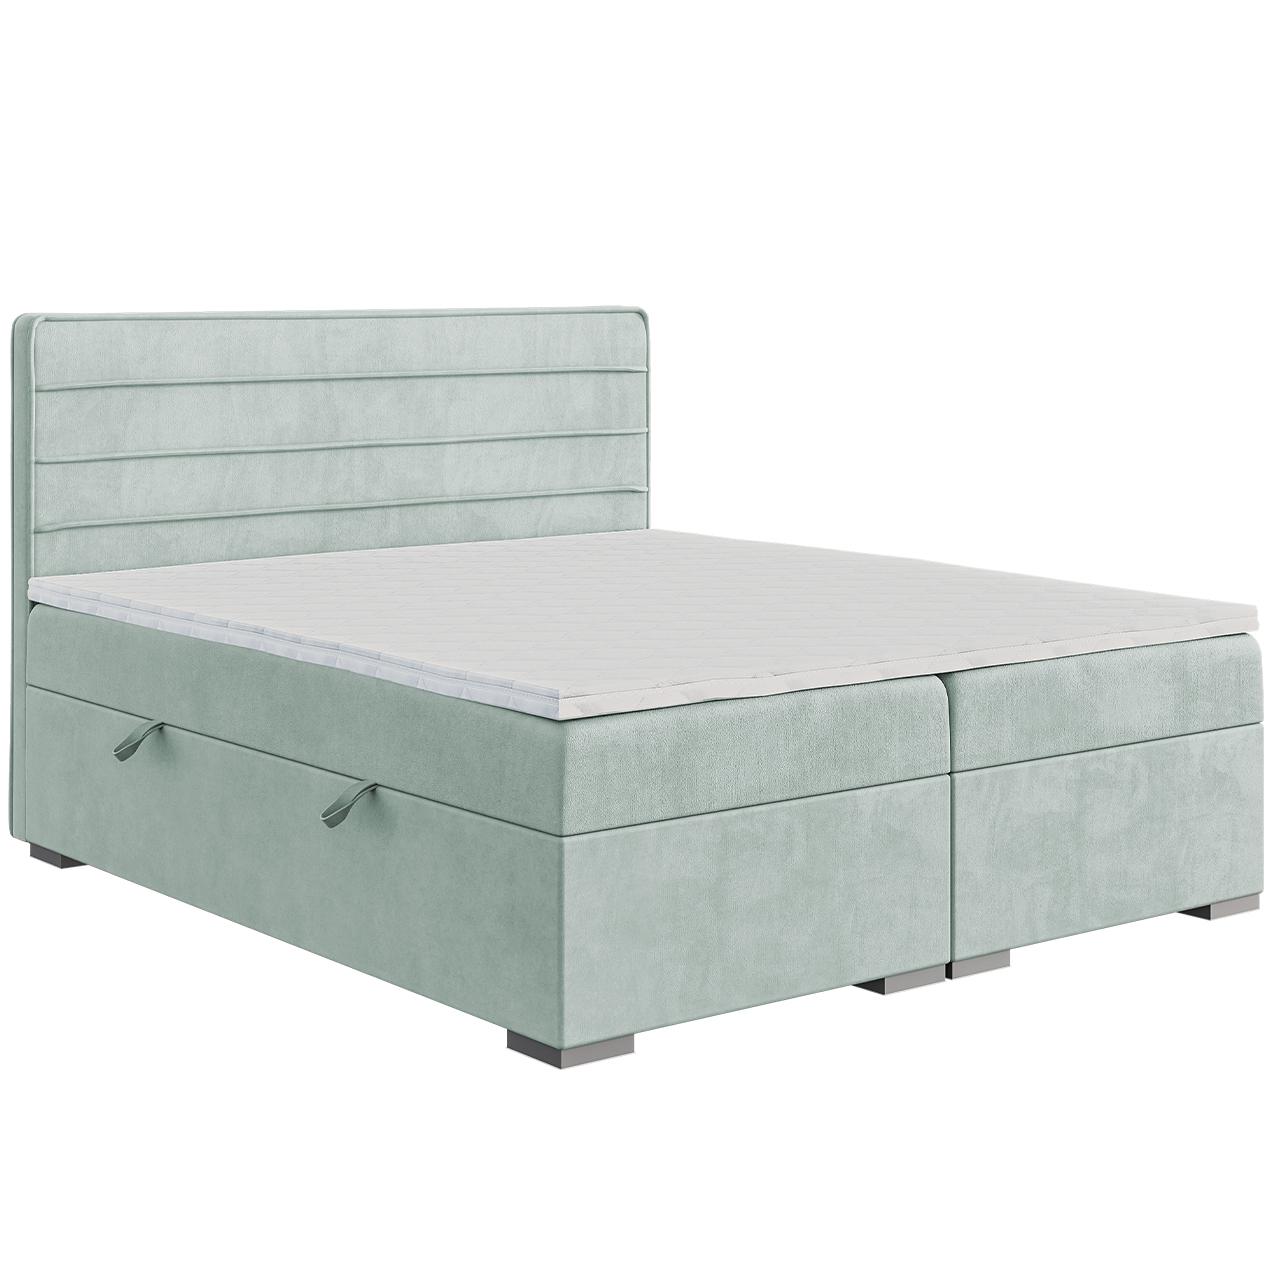 Upholstered bed BEROTTI 160x200 magic velvet 2227